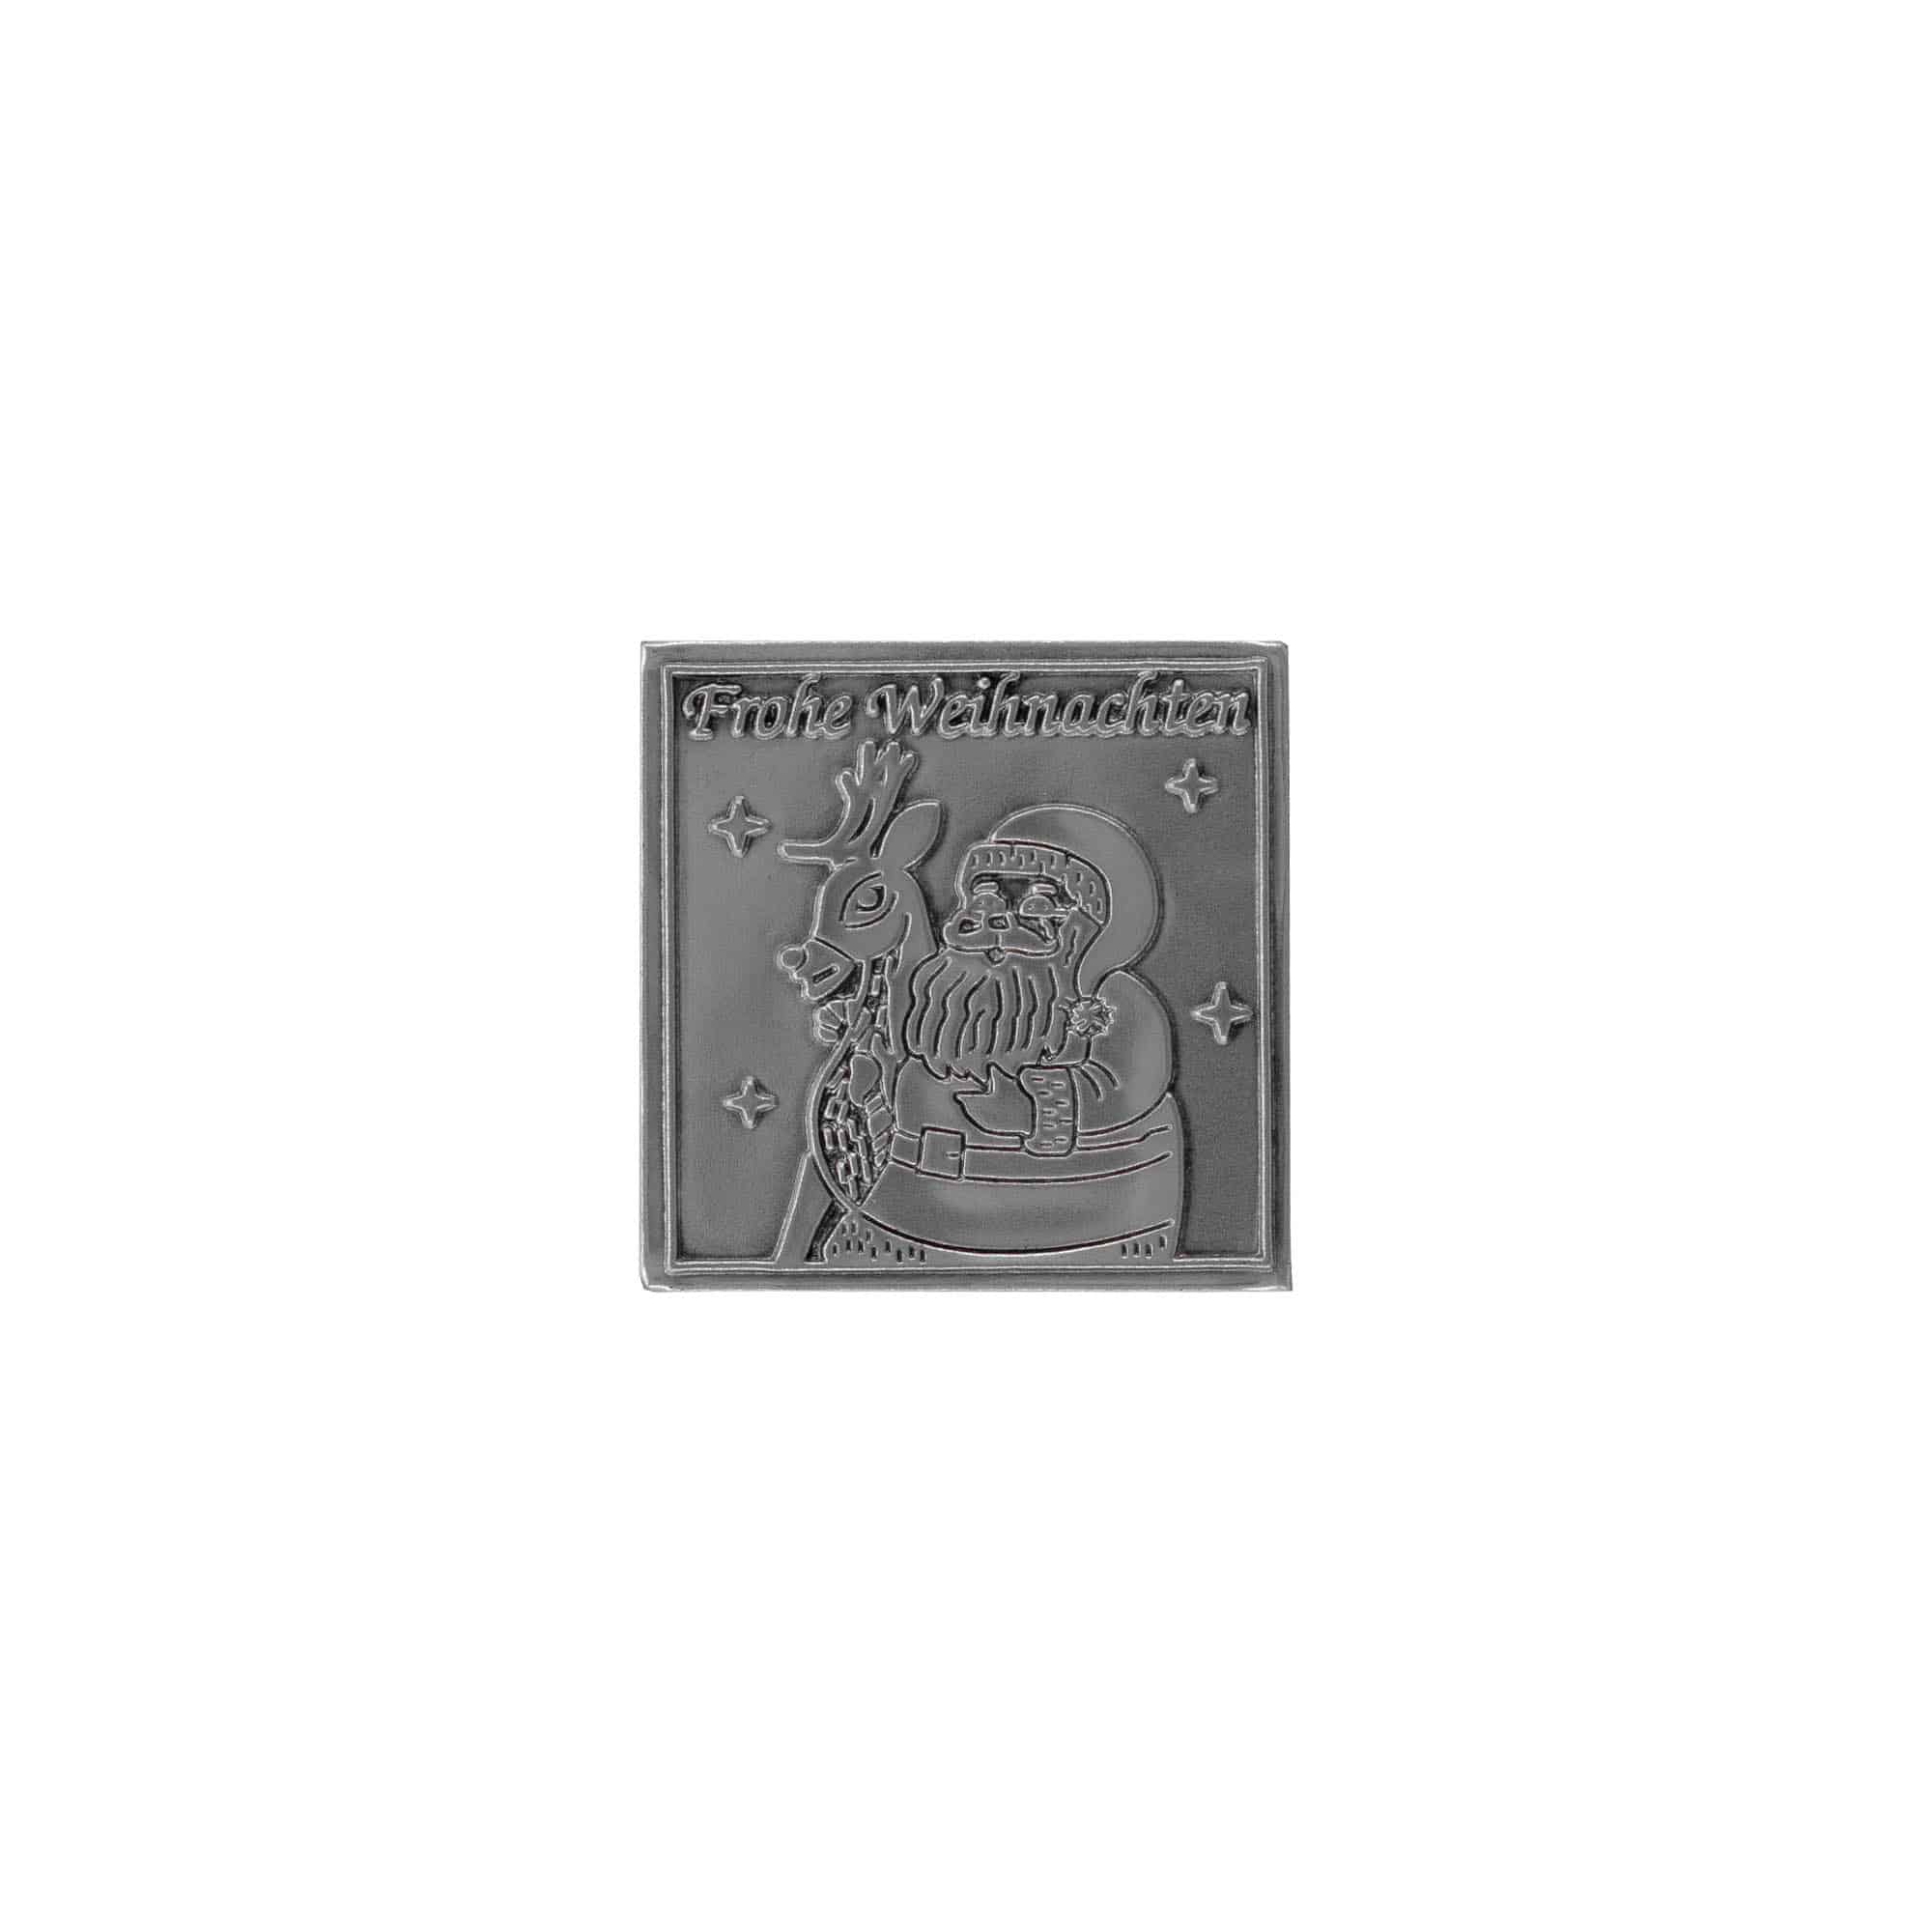 Etykieta cynowa 'Wesołych Świąt', kwadratowa, metal, kolor srebrny